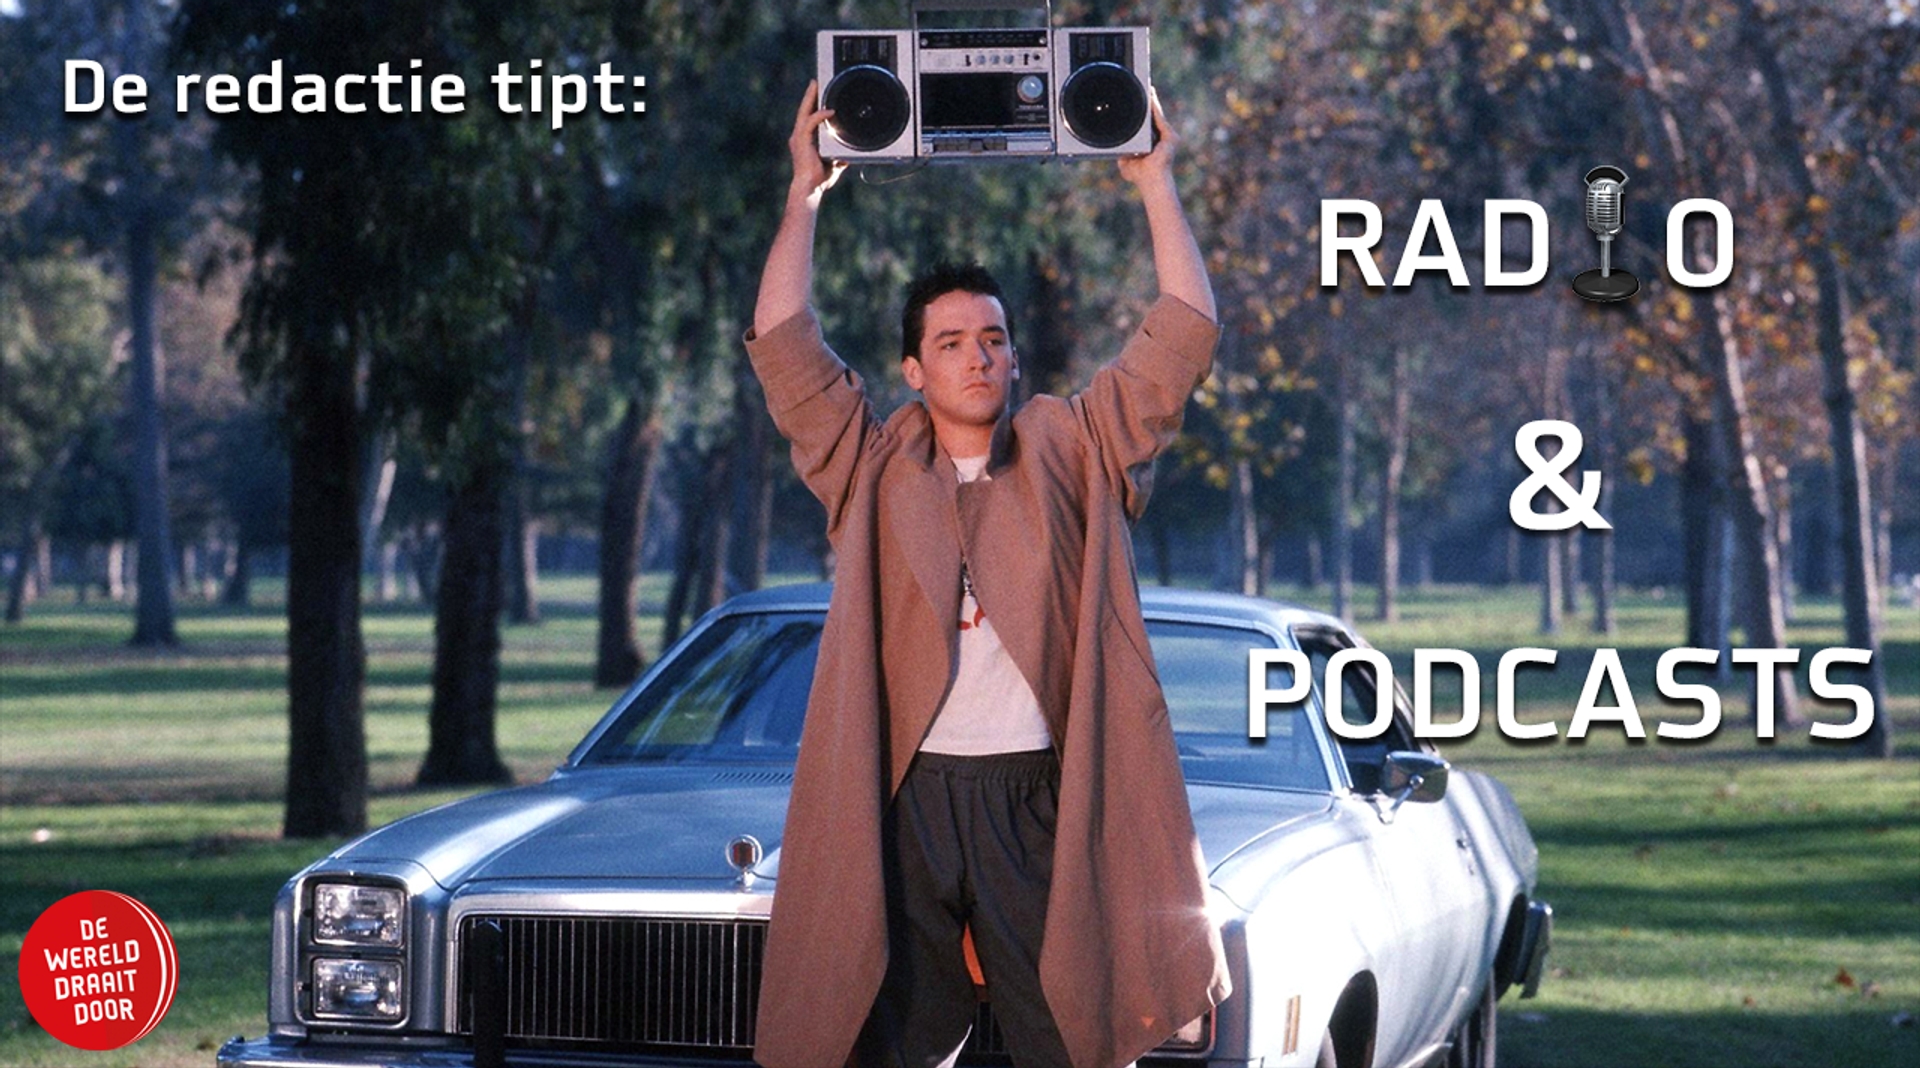 Afbeelding van De Redactie Tipt: Radio & Podcasts